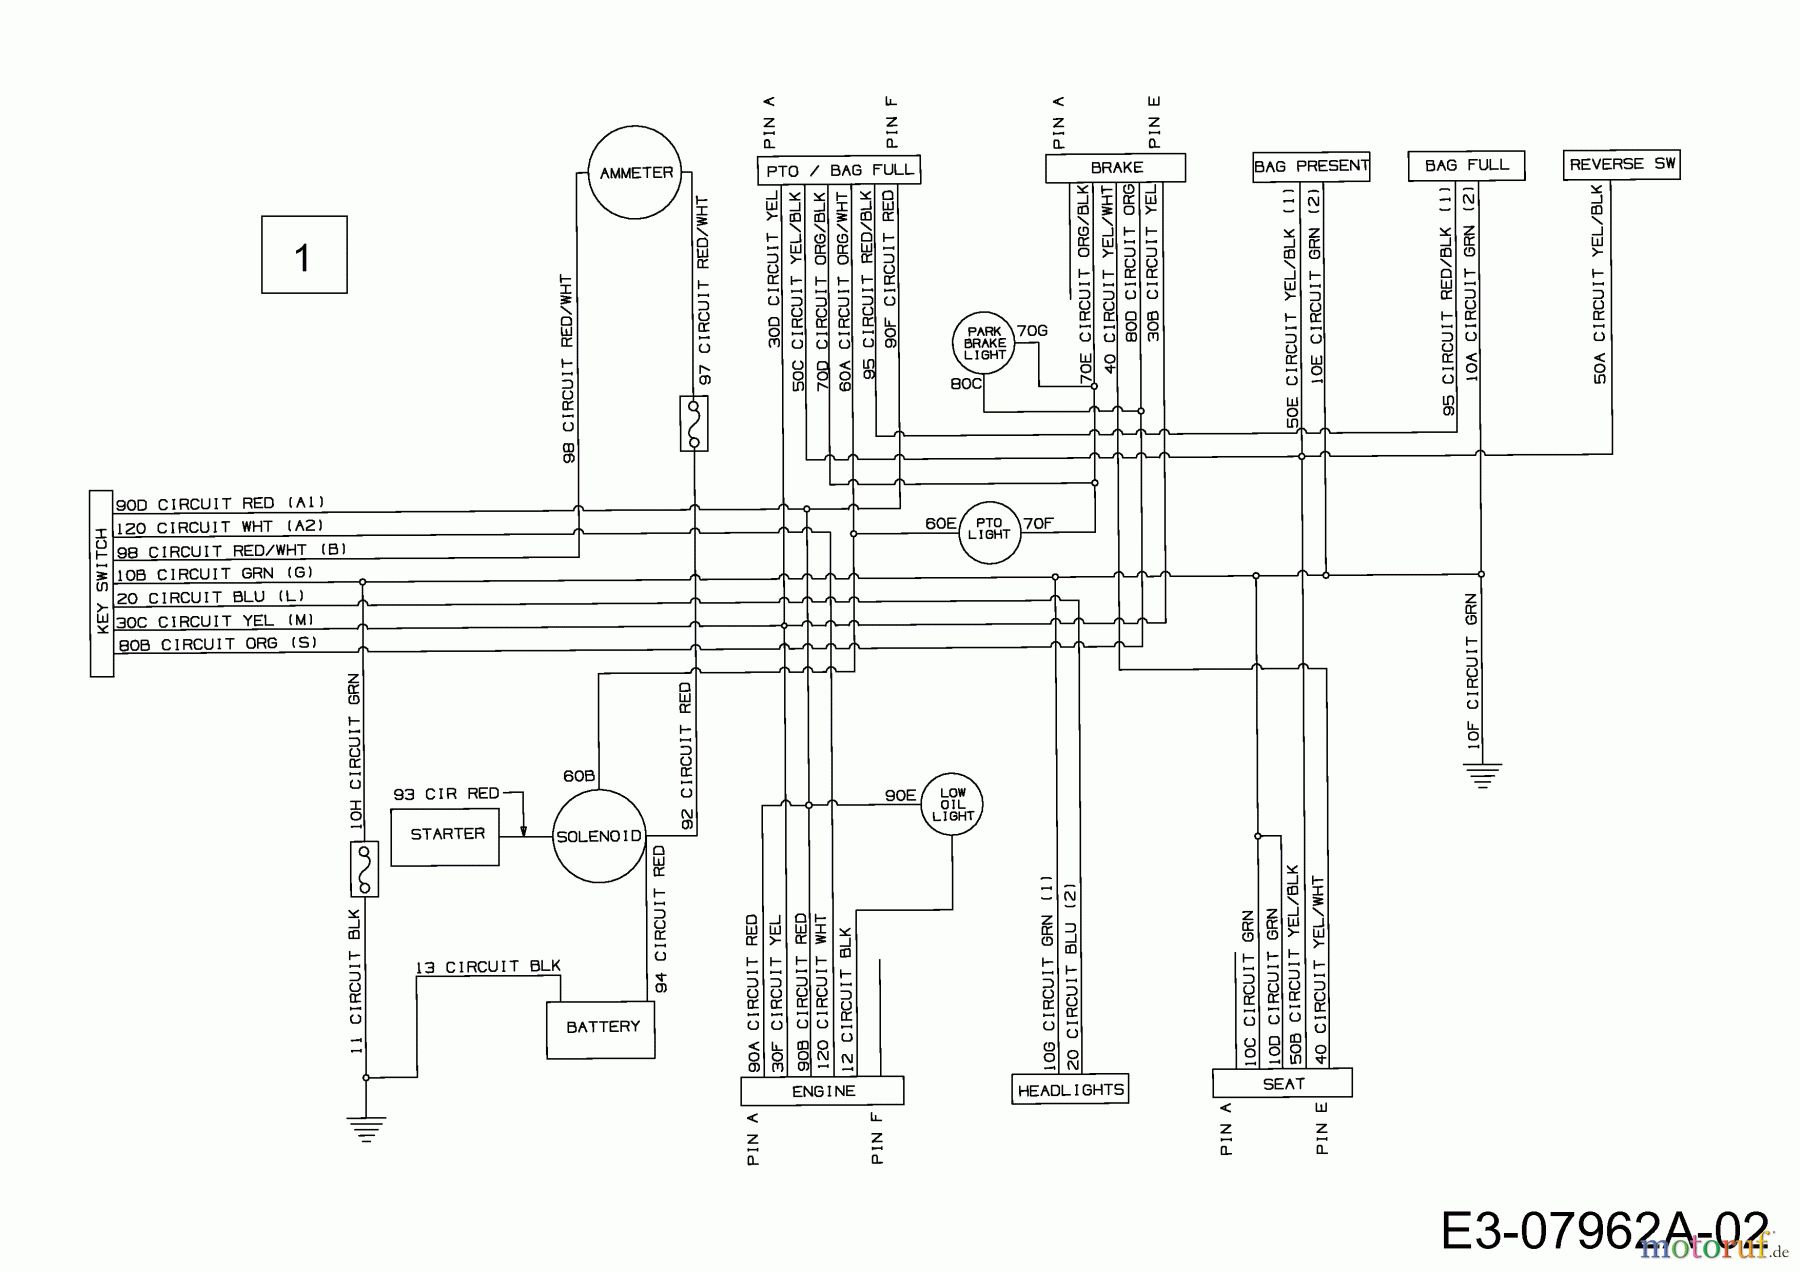  Gutbrod Lawn tractors GLX 107 SAL 13AE506G690  (2002) Wiring diagram